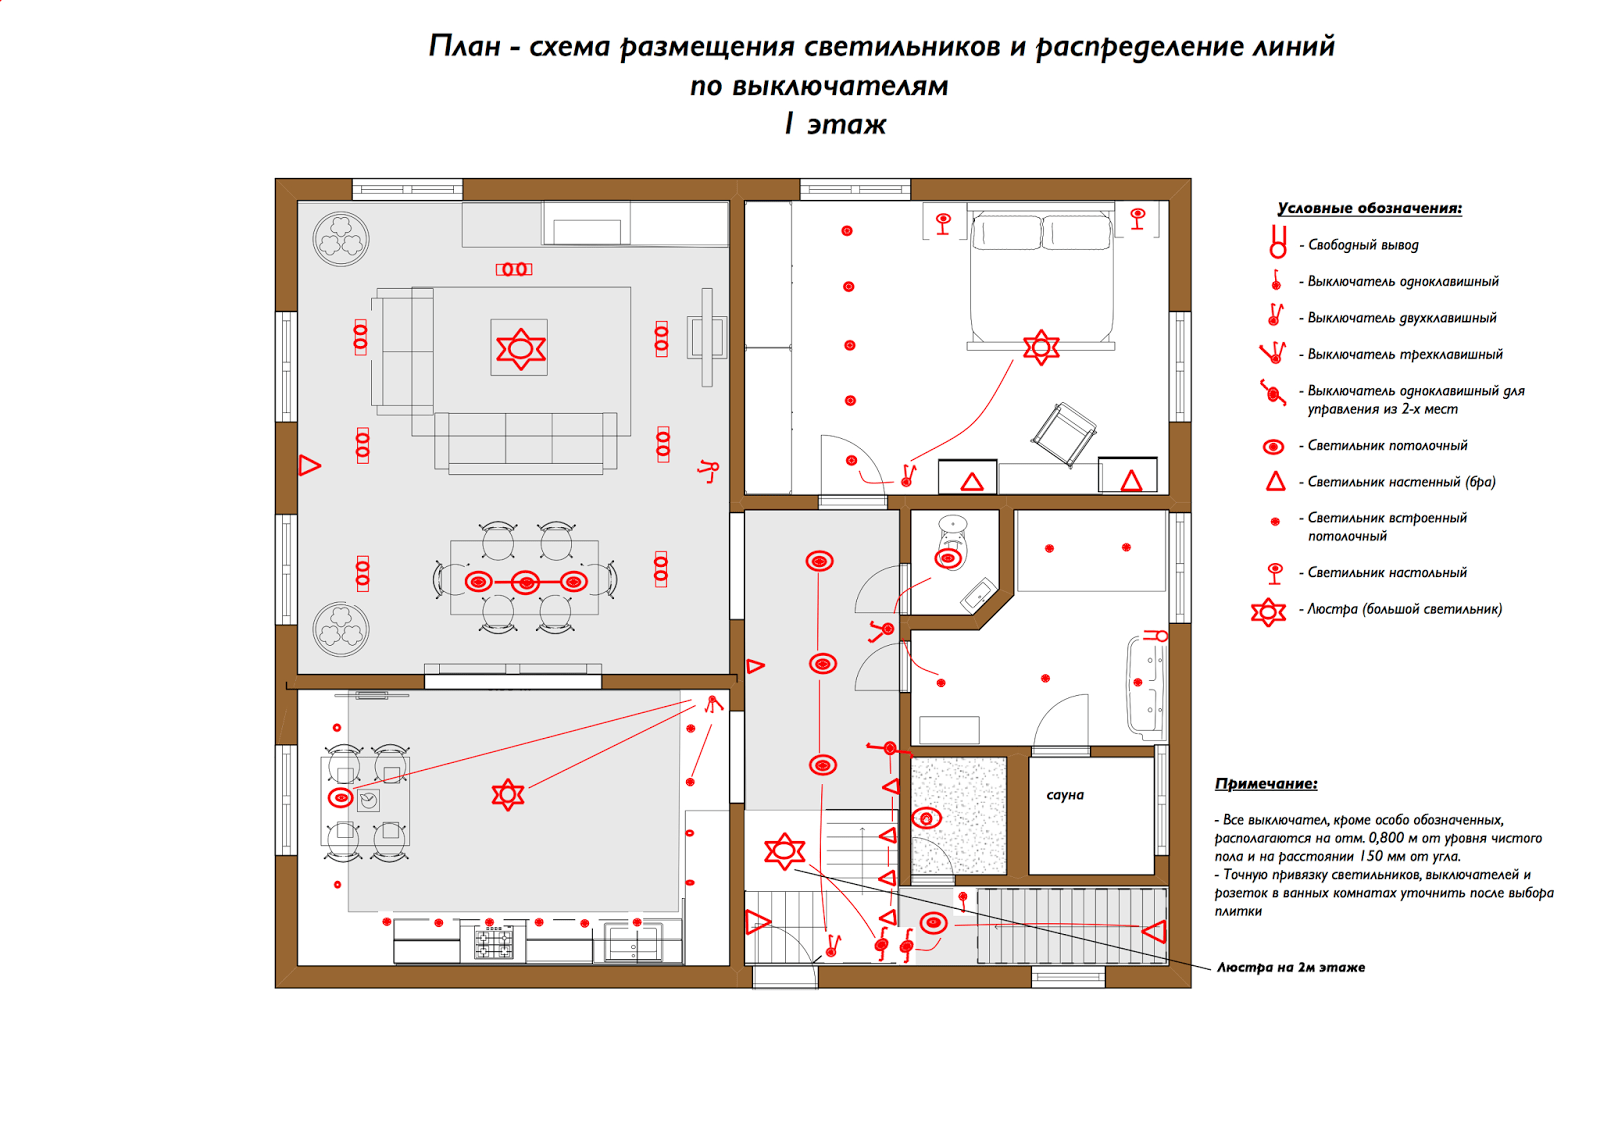 Схема освещения помещения с выключателями